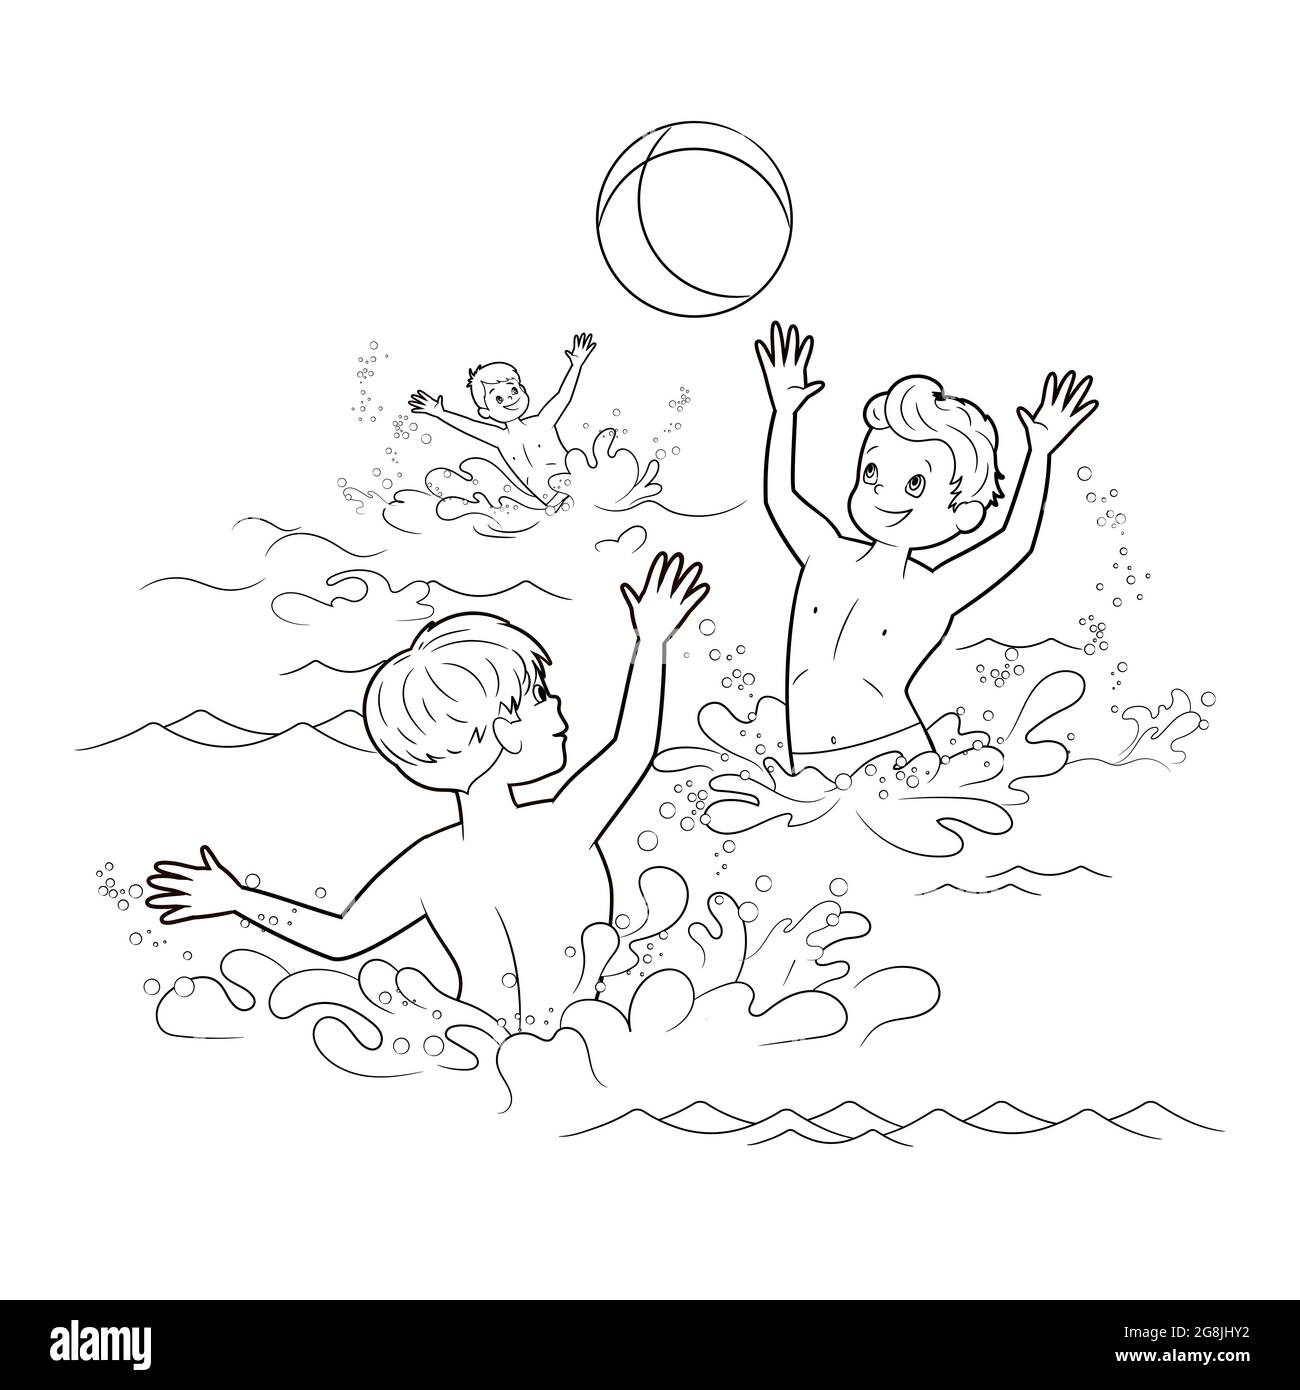 Malbuch: Drei Jungen spielen mit einem Ball in einem Teich. Sommer-Illustration zum Thema Strand und Meer, Fluss. Vektorgrafik Stock Vektor